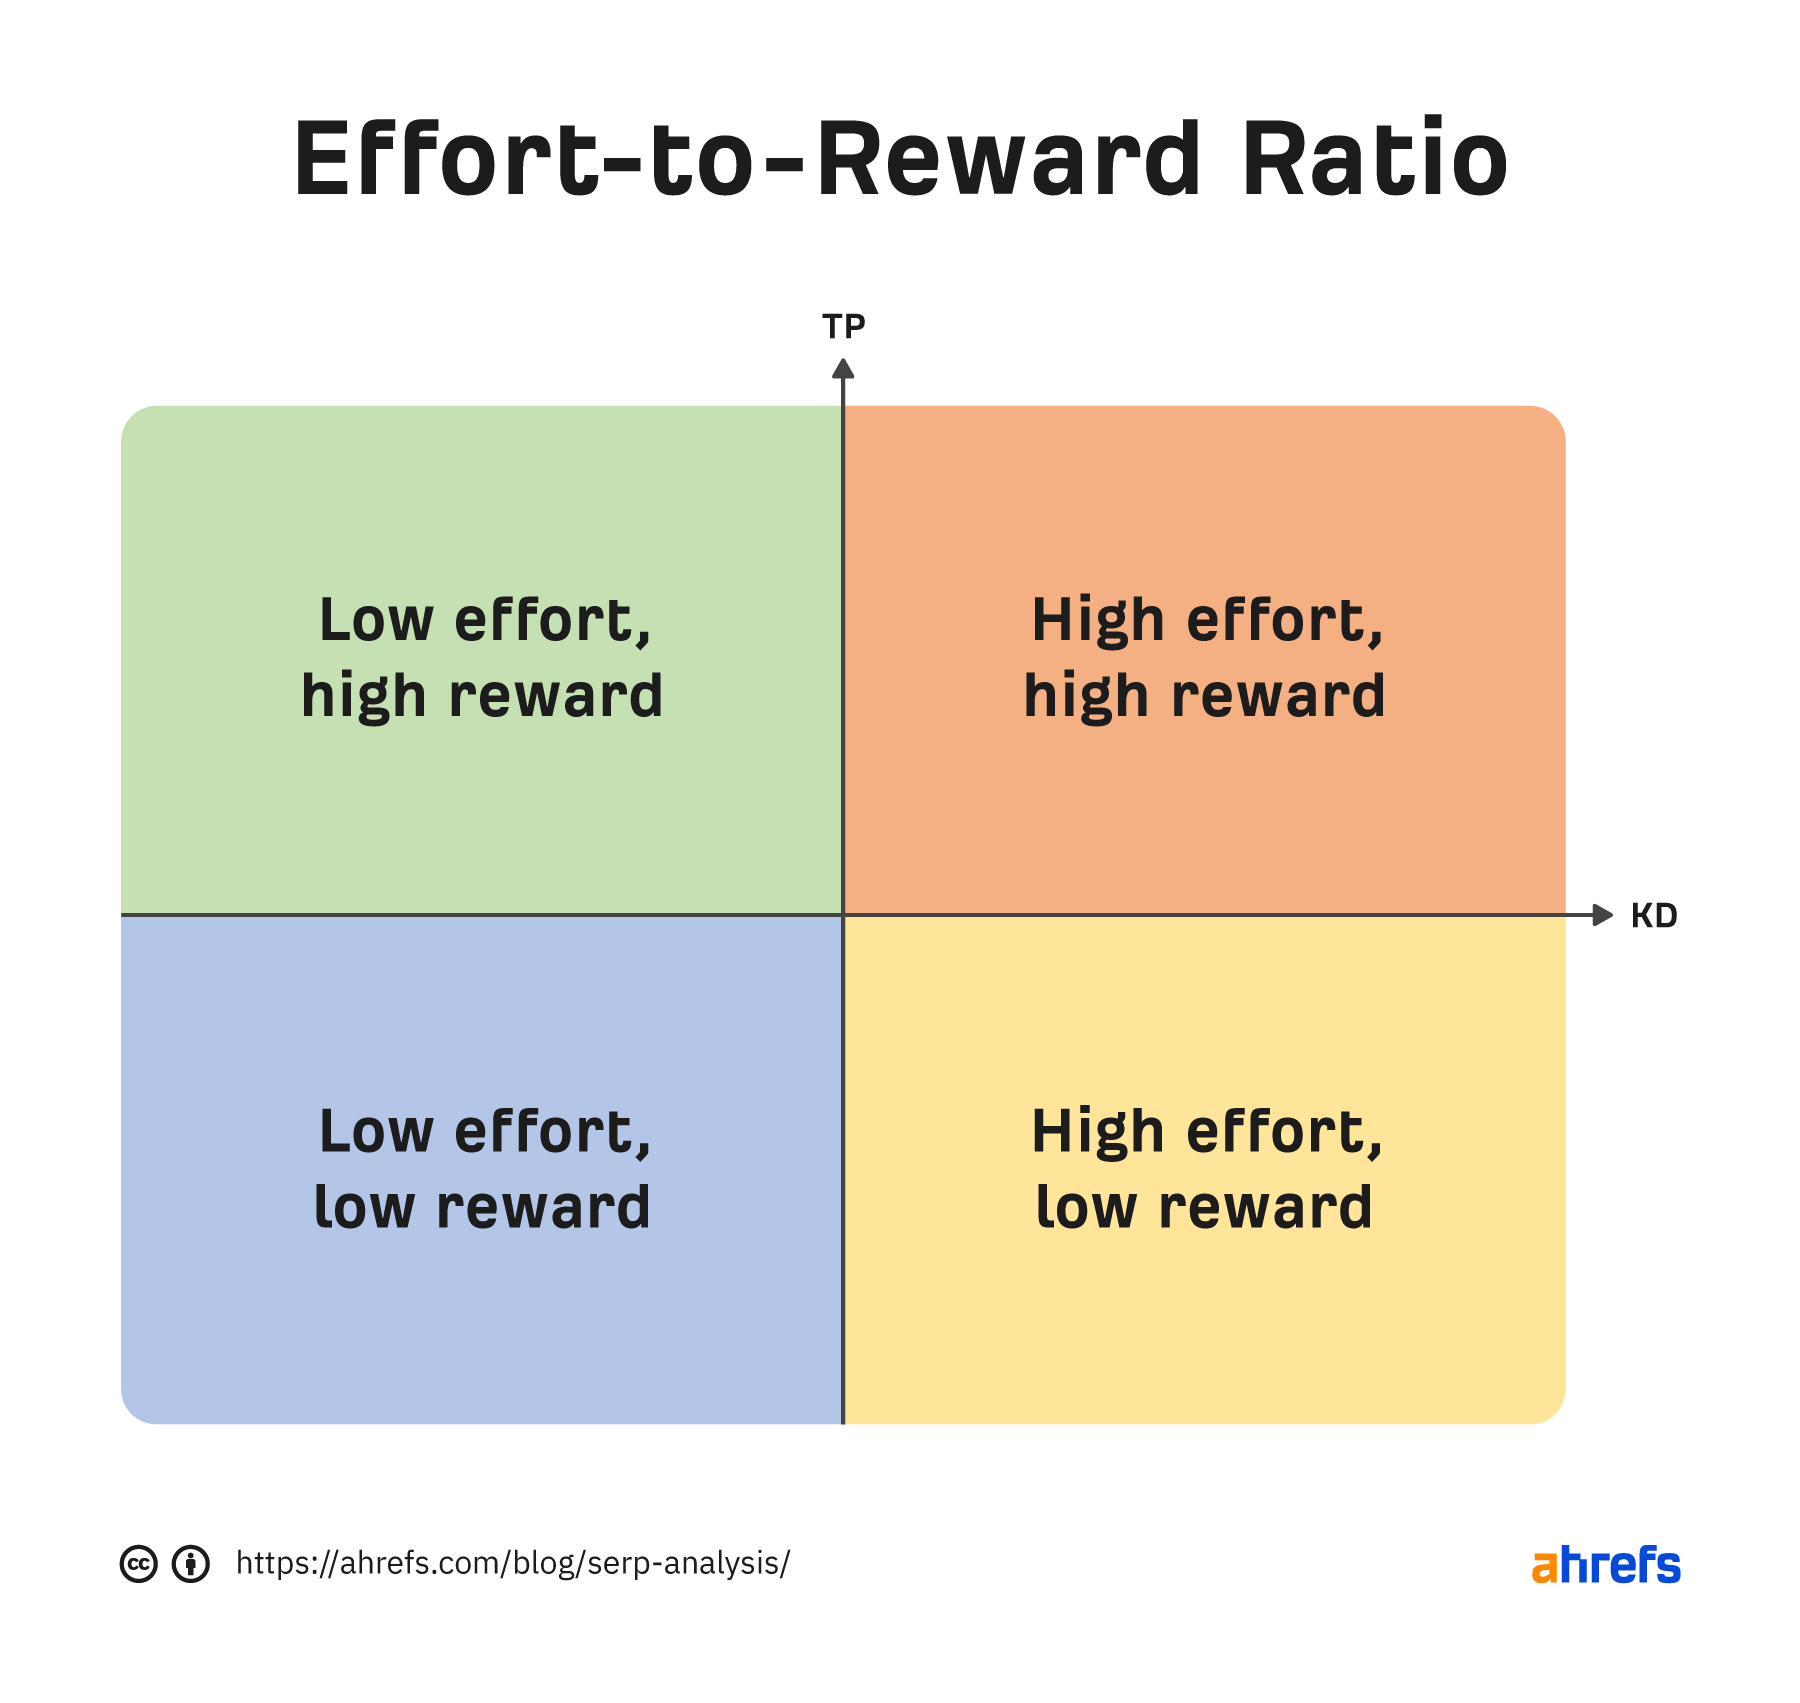 Effort-to-reward ratio